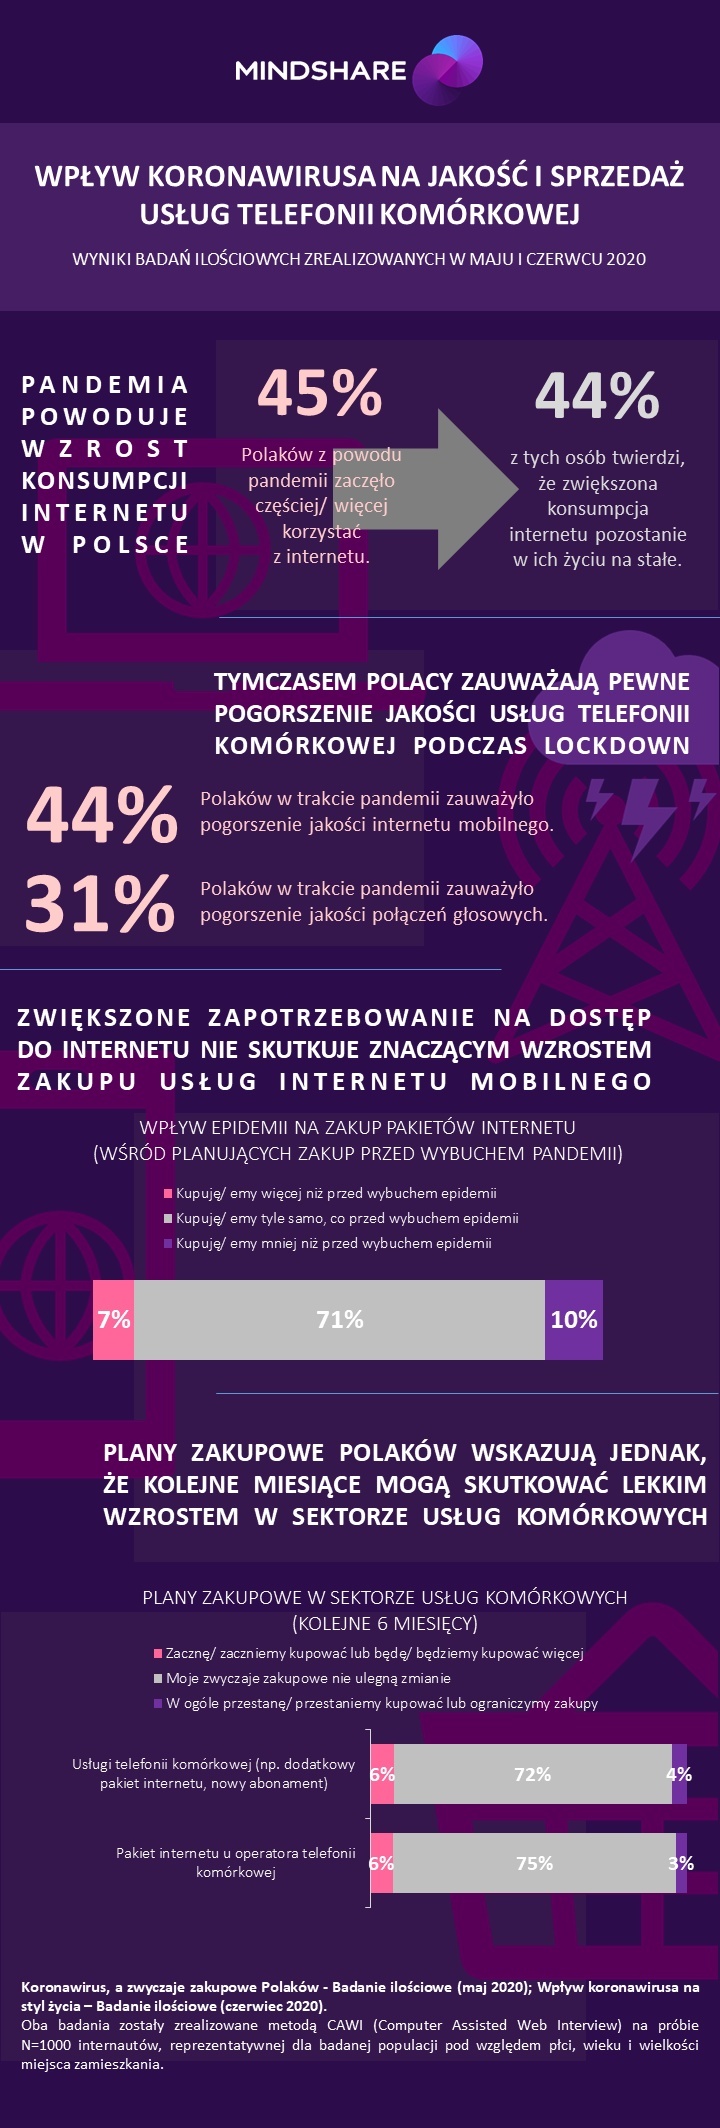 infografika_wplyw-koronawirusa-na-jakosc-i-sprzedaz-uslug-telefonii-komorkowej